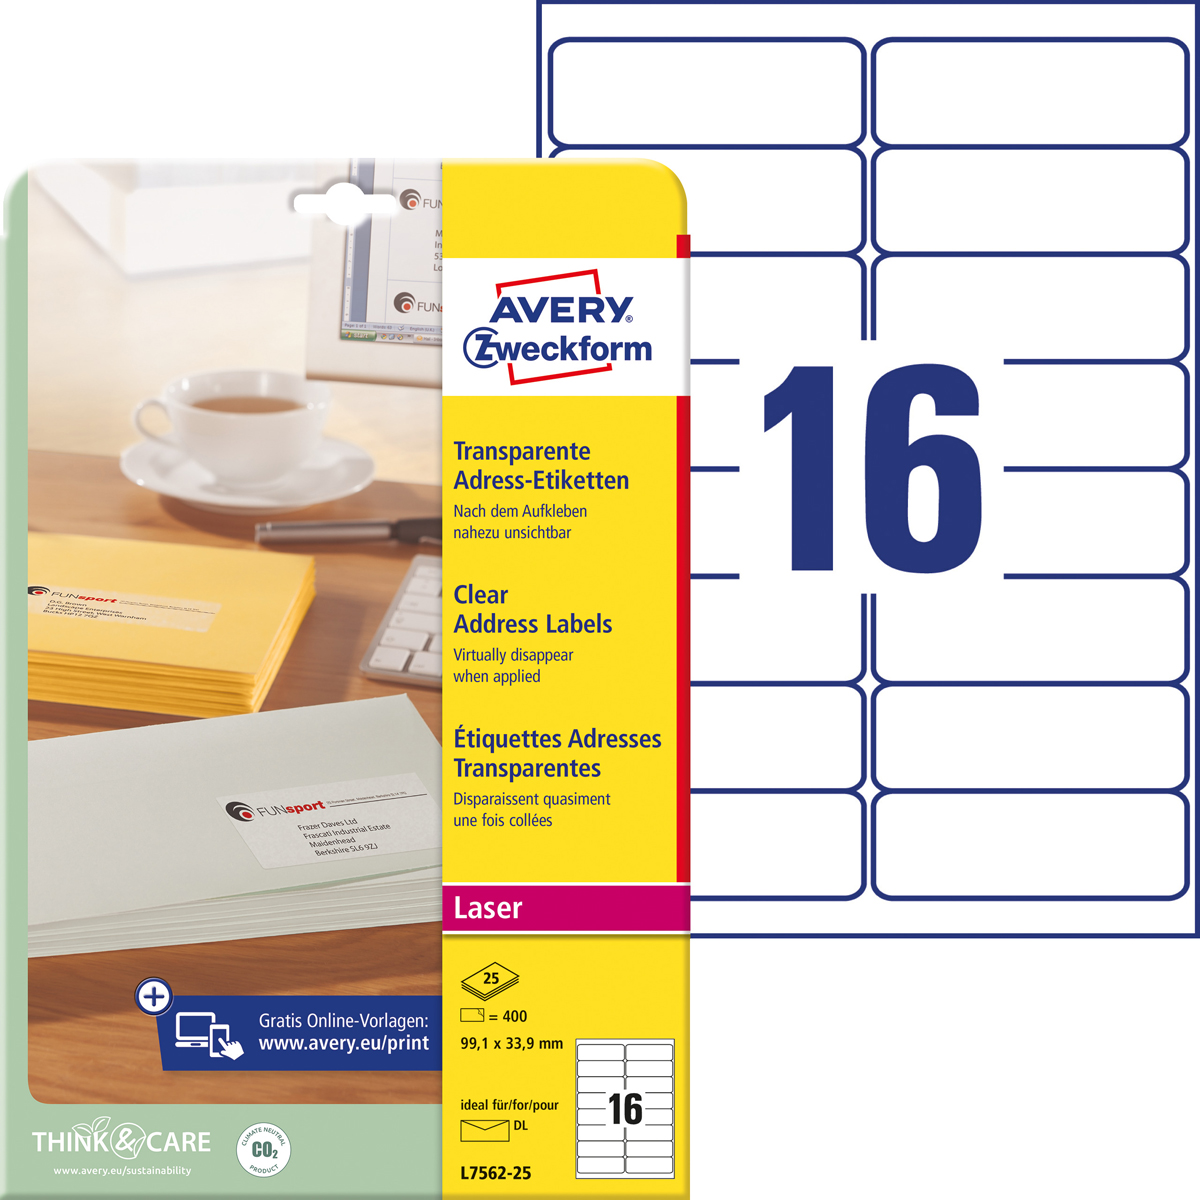 Avery Zweckform L7562-25 Adress-Etiketten, 99,1 x, 33,9 mm, DIN lang Kuverts, 25 Bogen/400 Etiketten